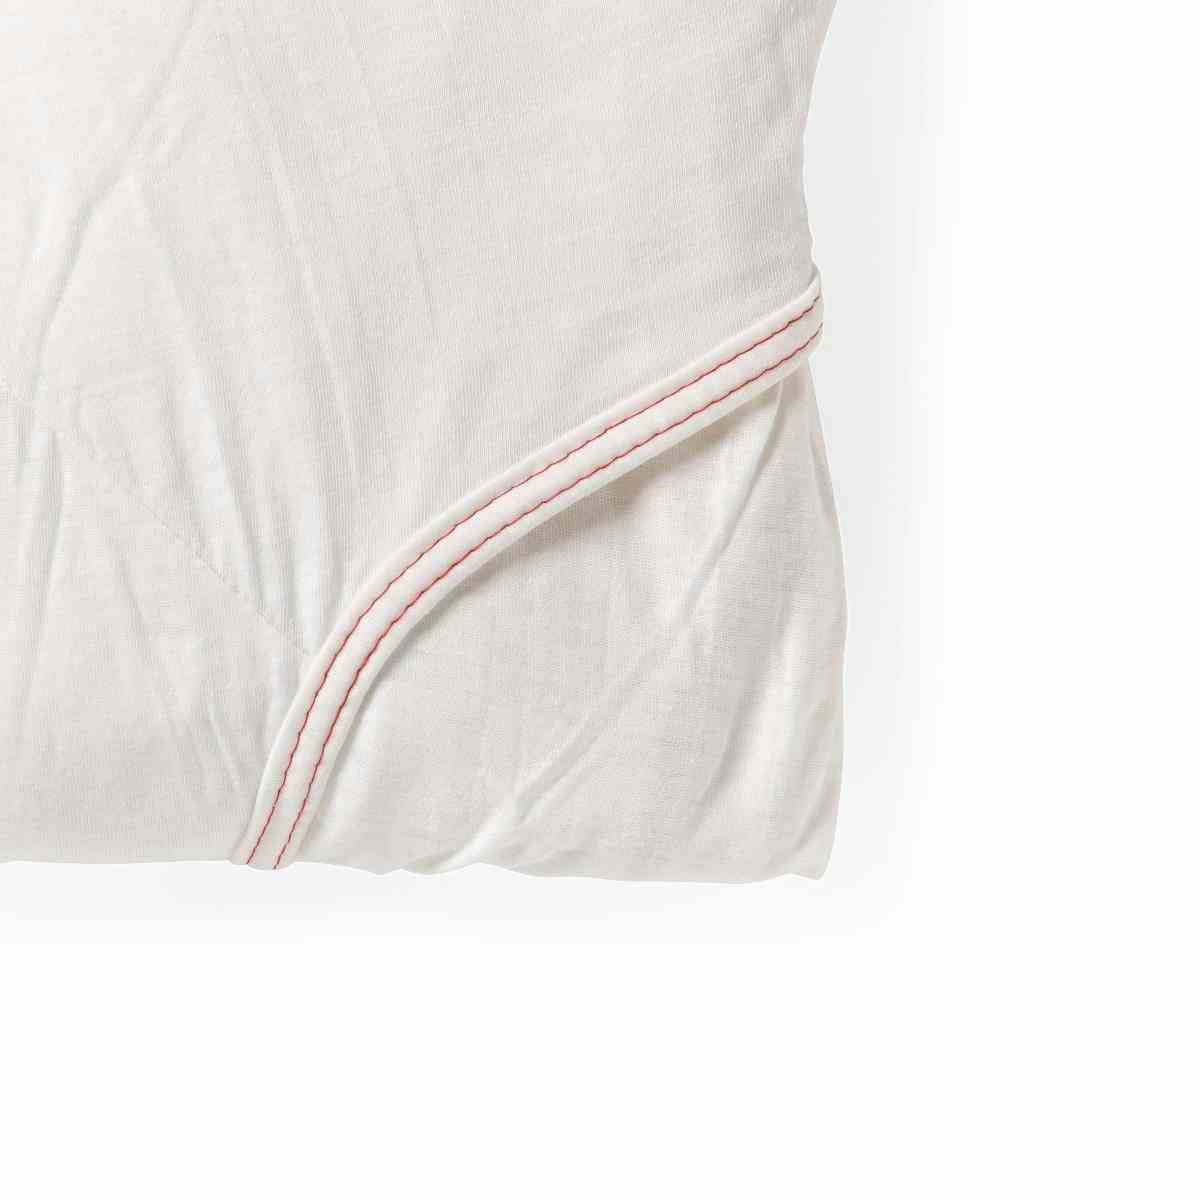 Medline Soft-Fit Knitted Flat Sheets, MDTDEALERPKH, White - One Size Fits Most - 1 Set